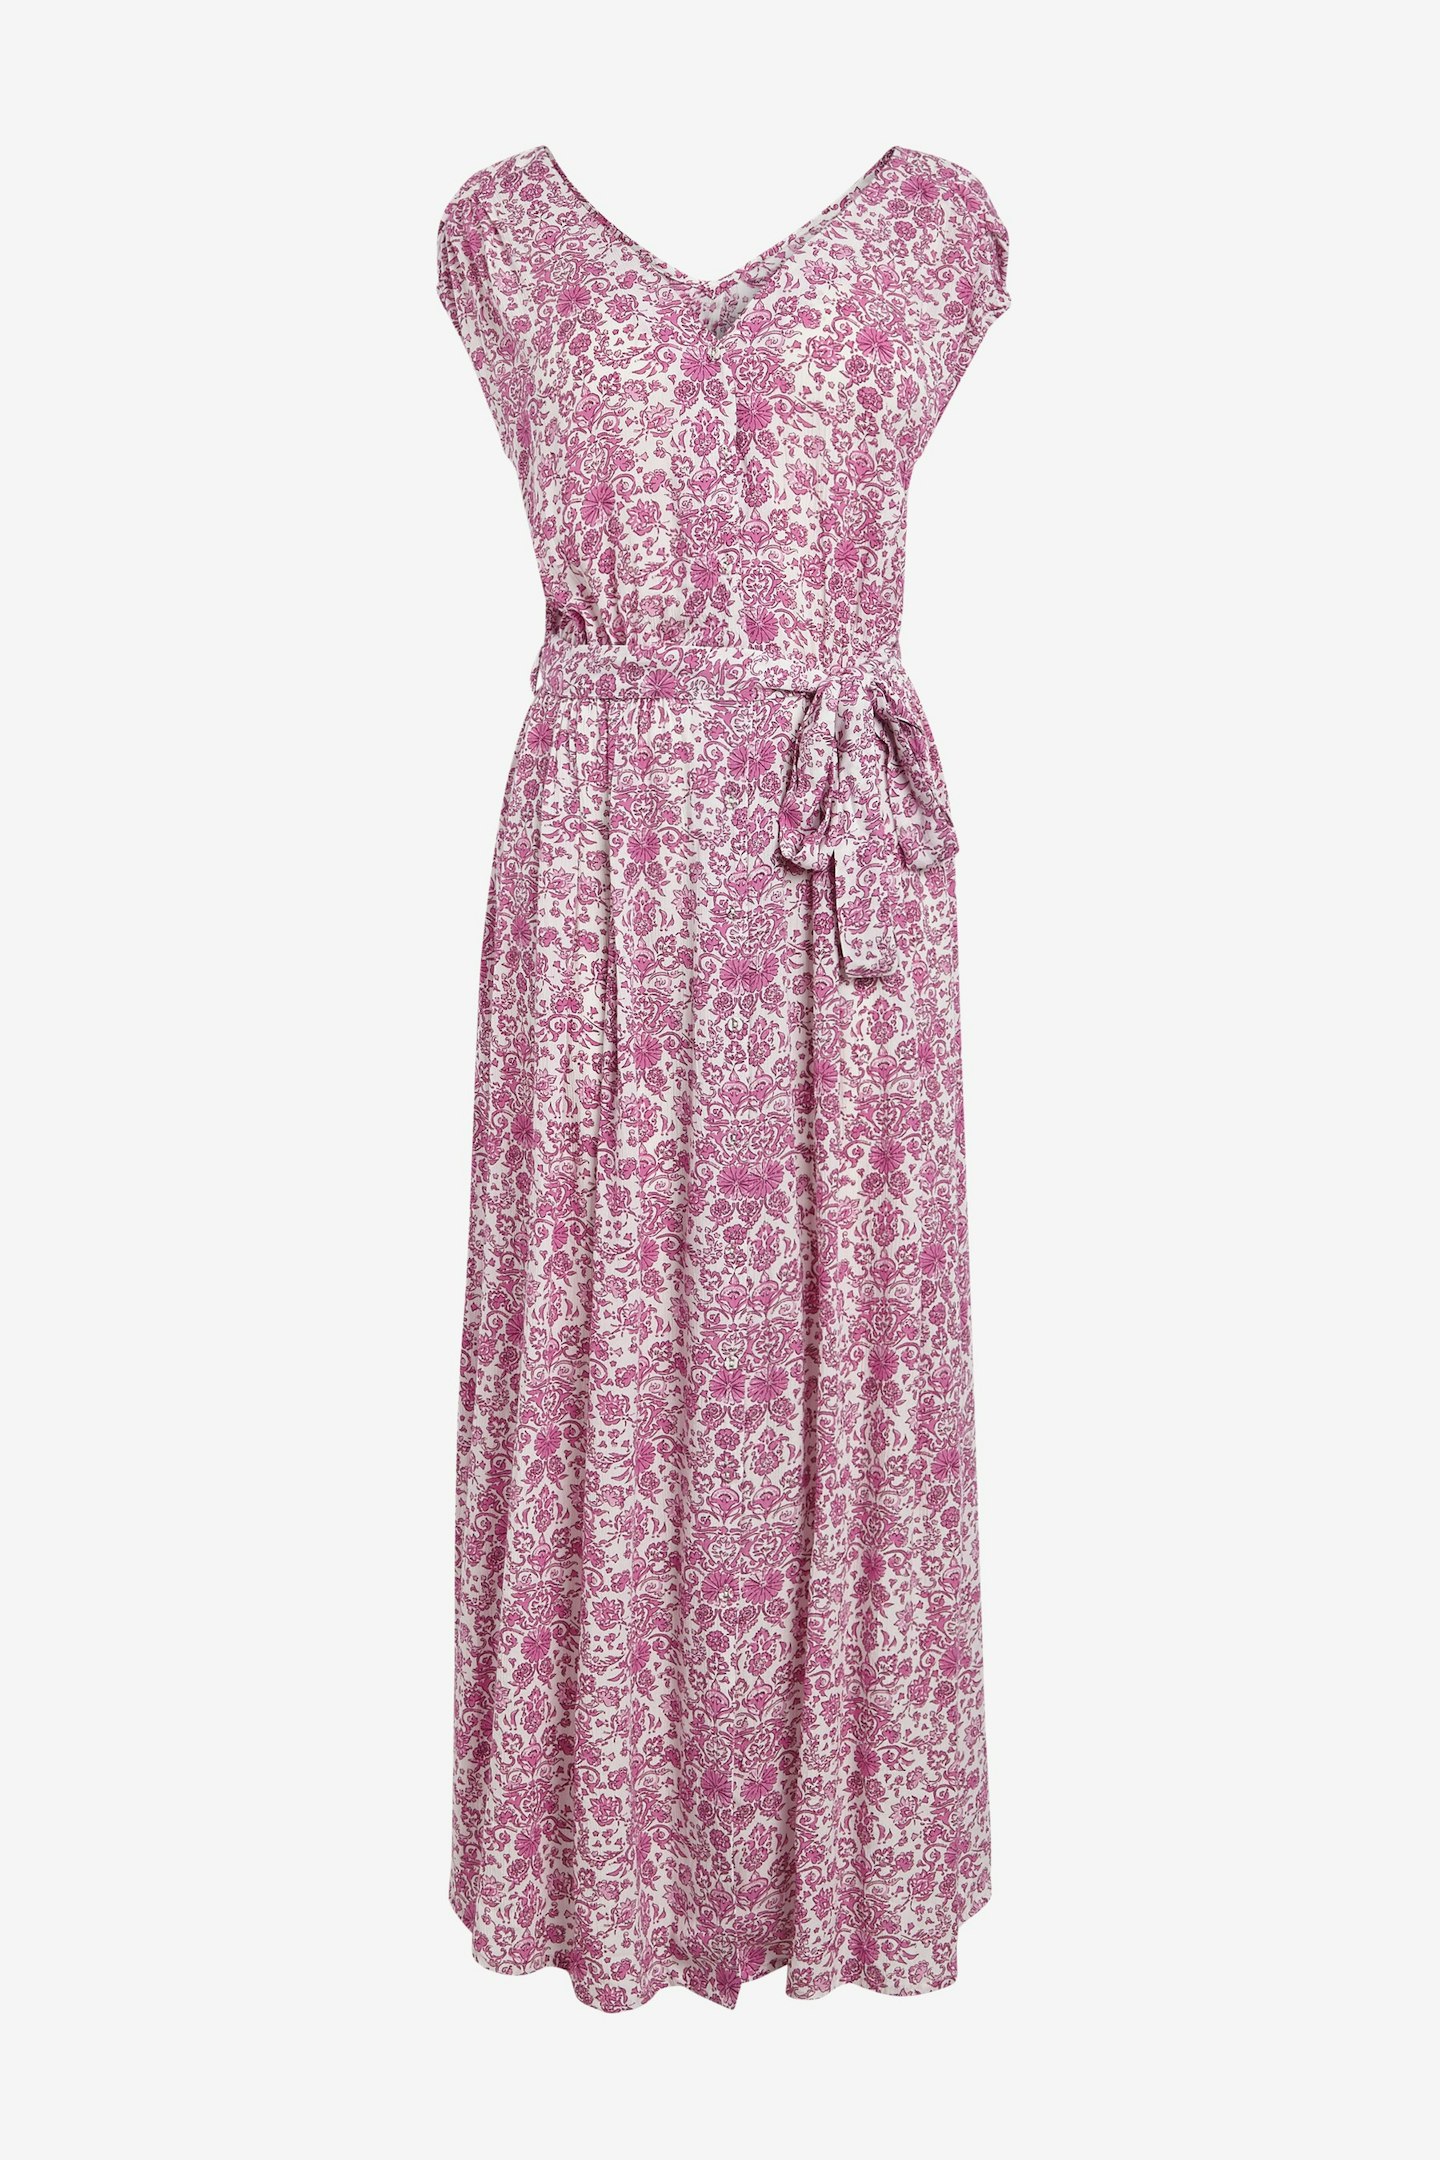 Next, Short Sleeve Maxi Dress, £30